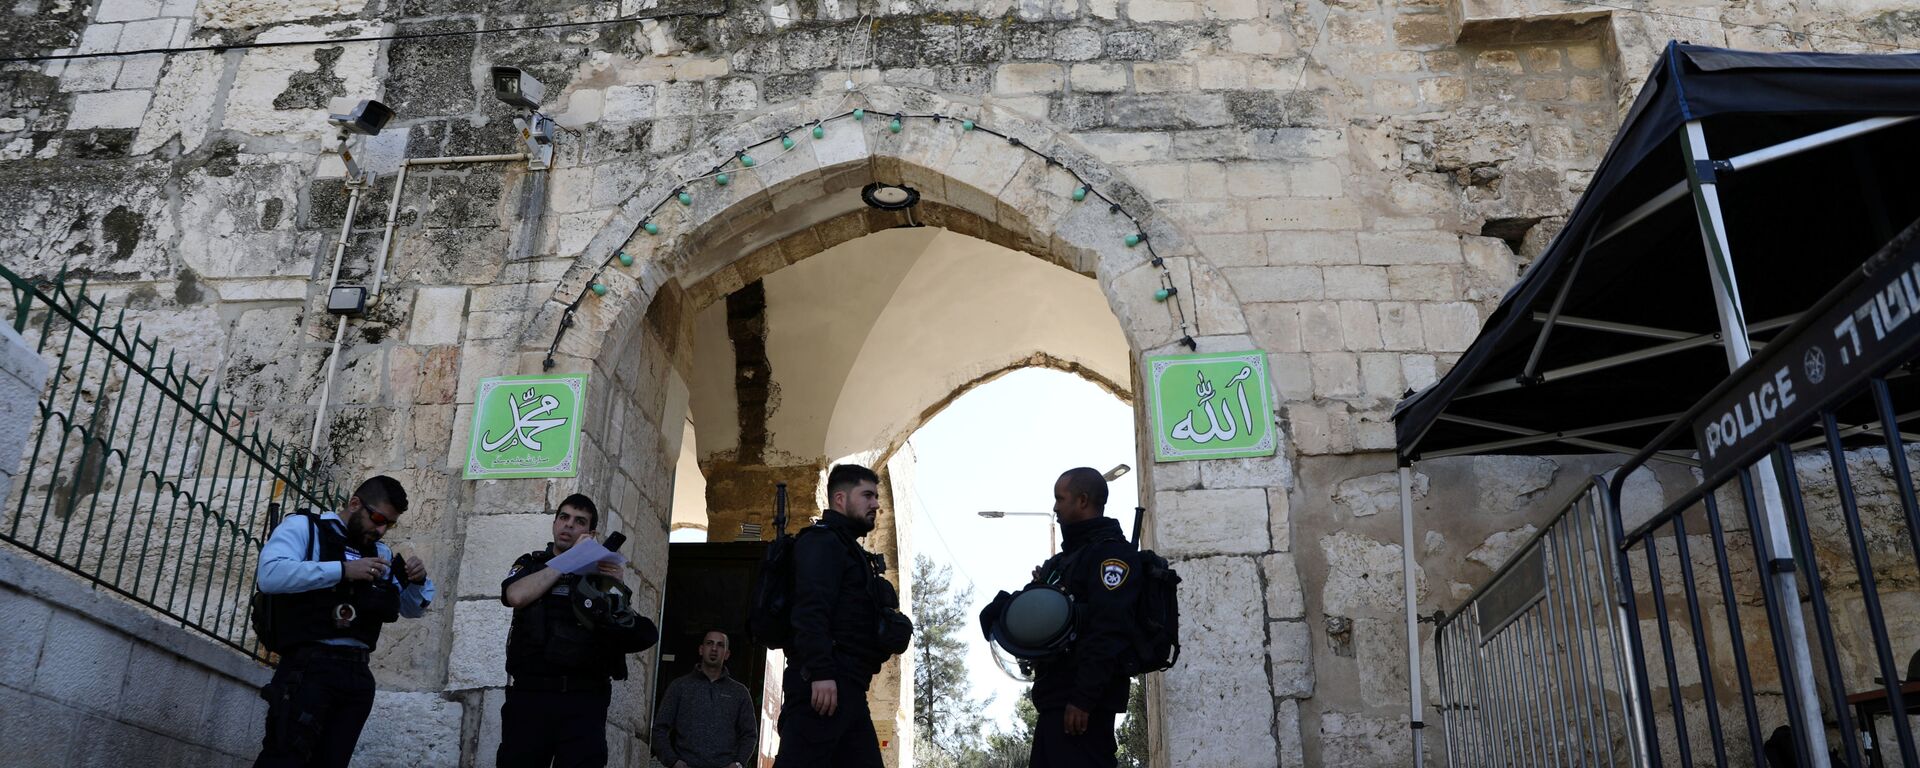 ضباط الشرطة الإسرائيلية يقومون بتأمين المنطقة في أعقاب إطلاق نار في محيد المسجد الأقصى في القدس - سبوتنيك عربي, 1920, 21.07.2020